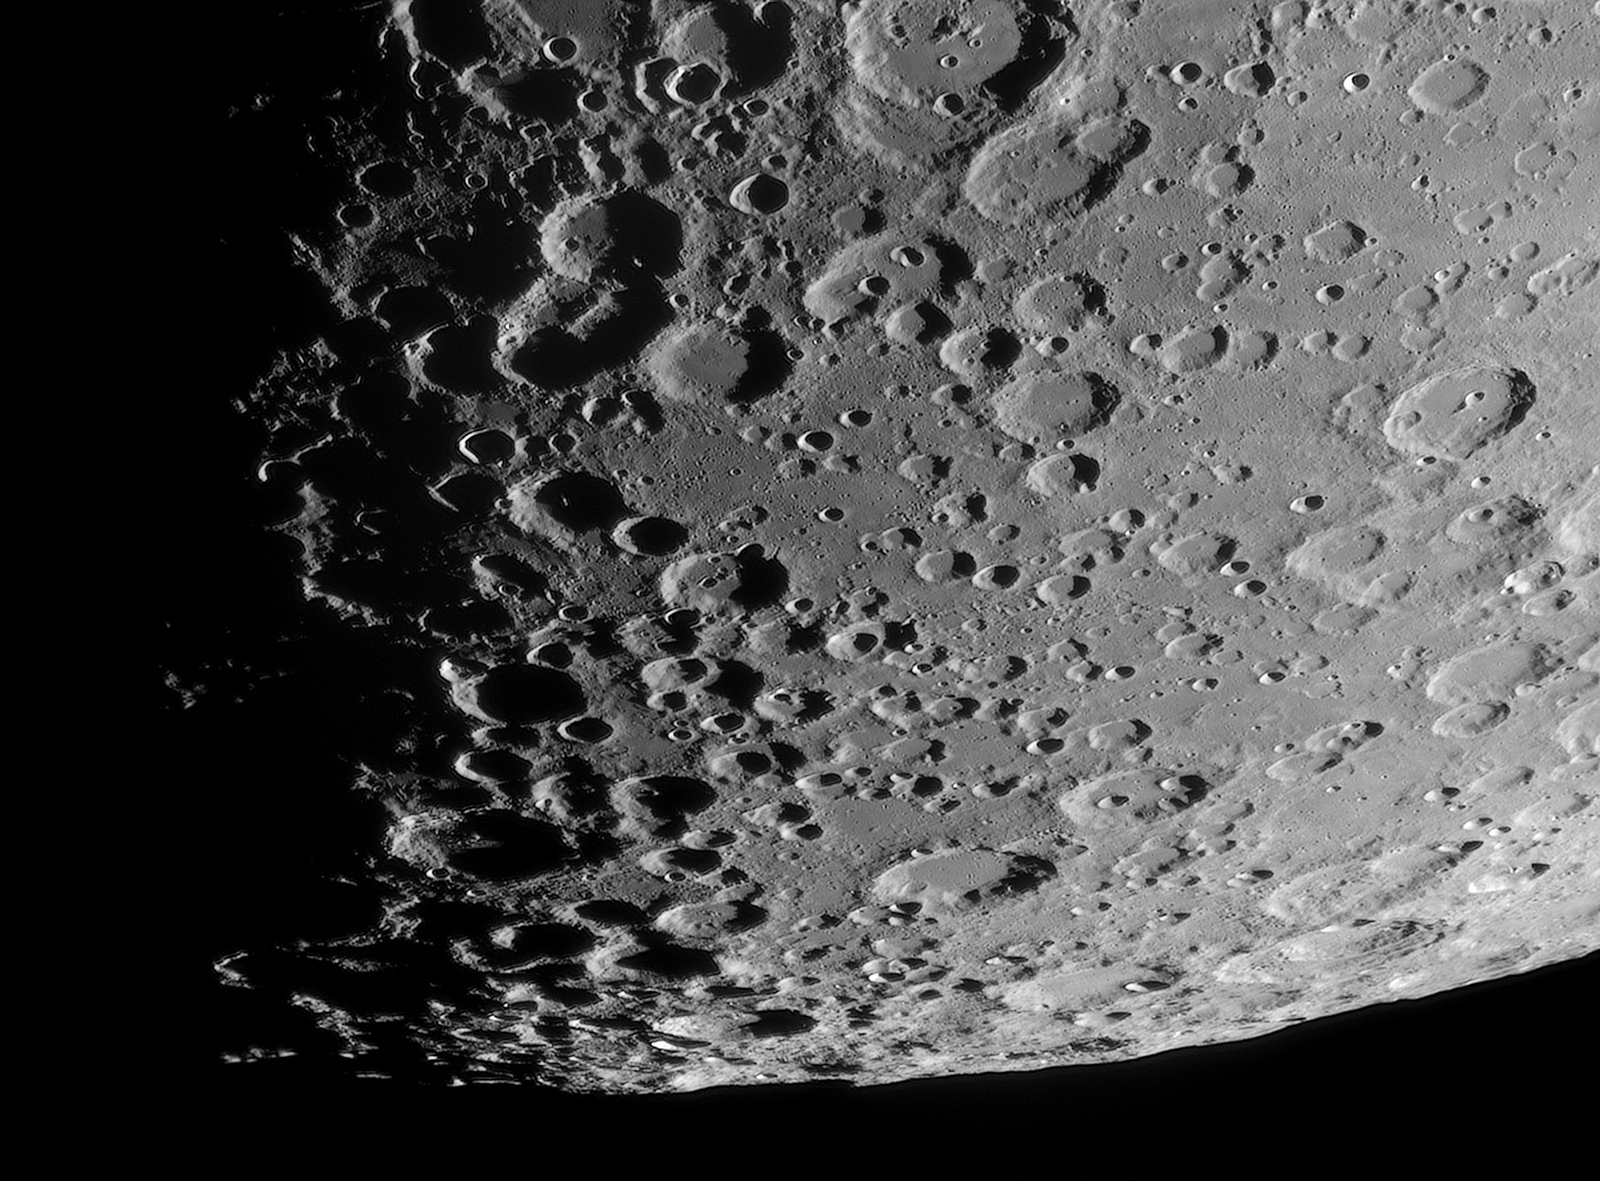 Lune-20220208_Clairaut-ba-02-AS.jpg.439b2e08e7f2056b8fa59324b6201978.jpg